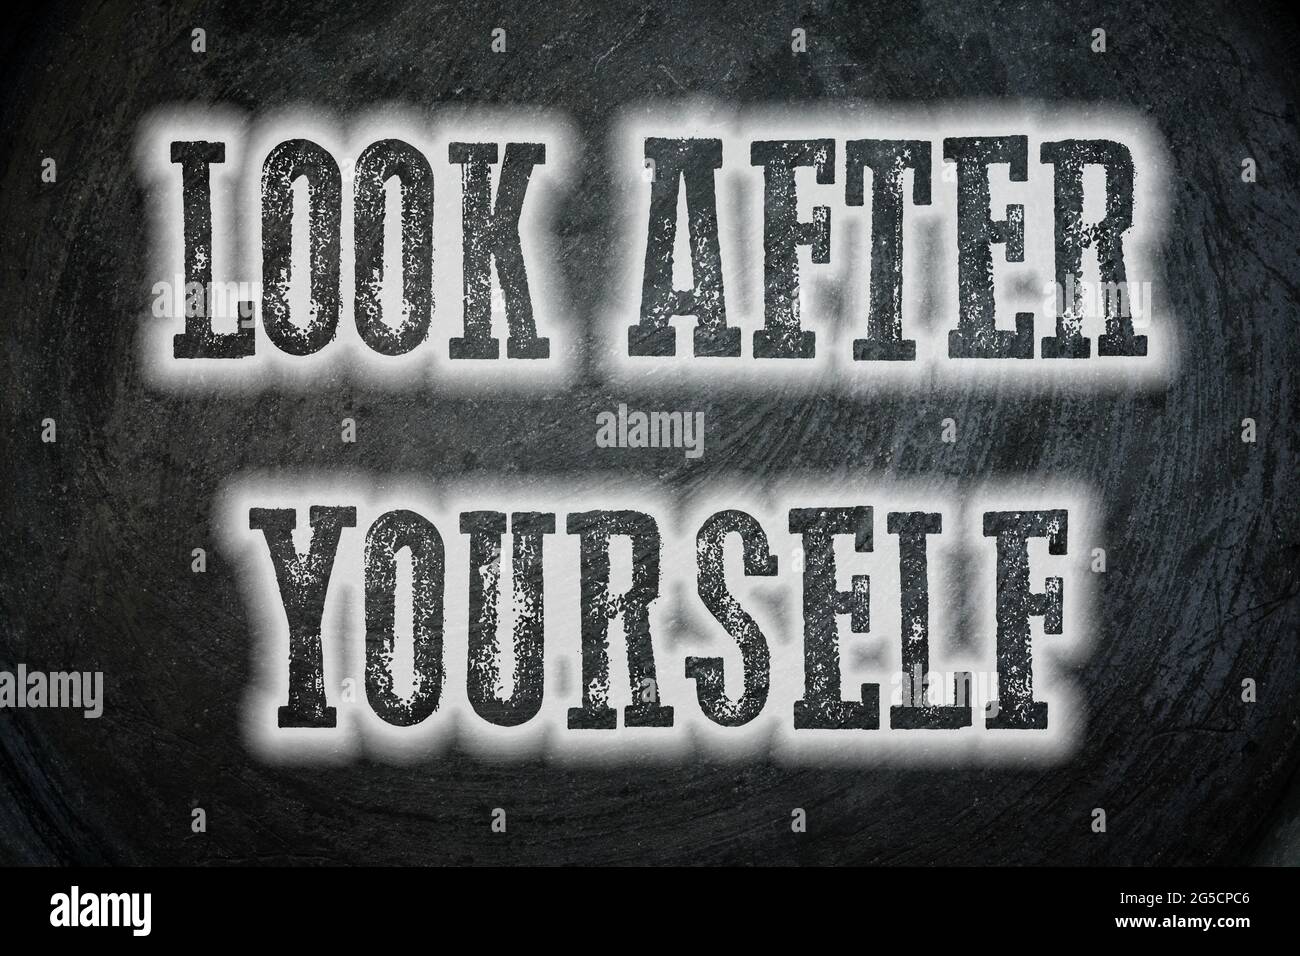 „Look After Yourself“-Konzepttext im Hintergrund Stockfoto